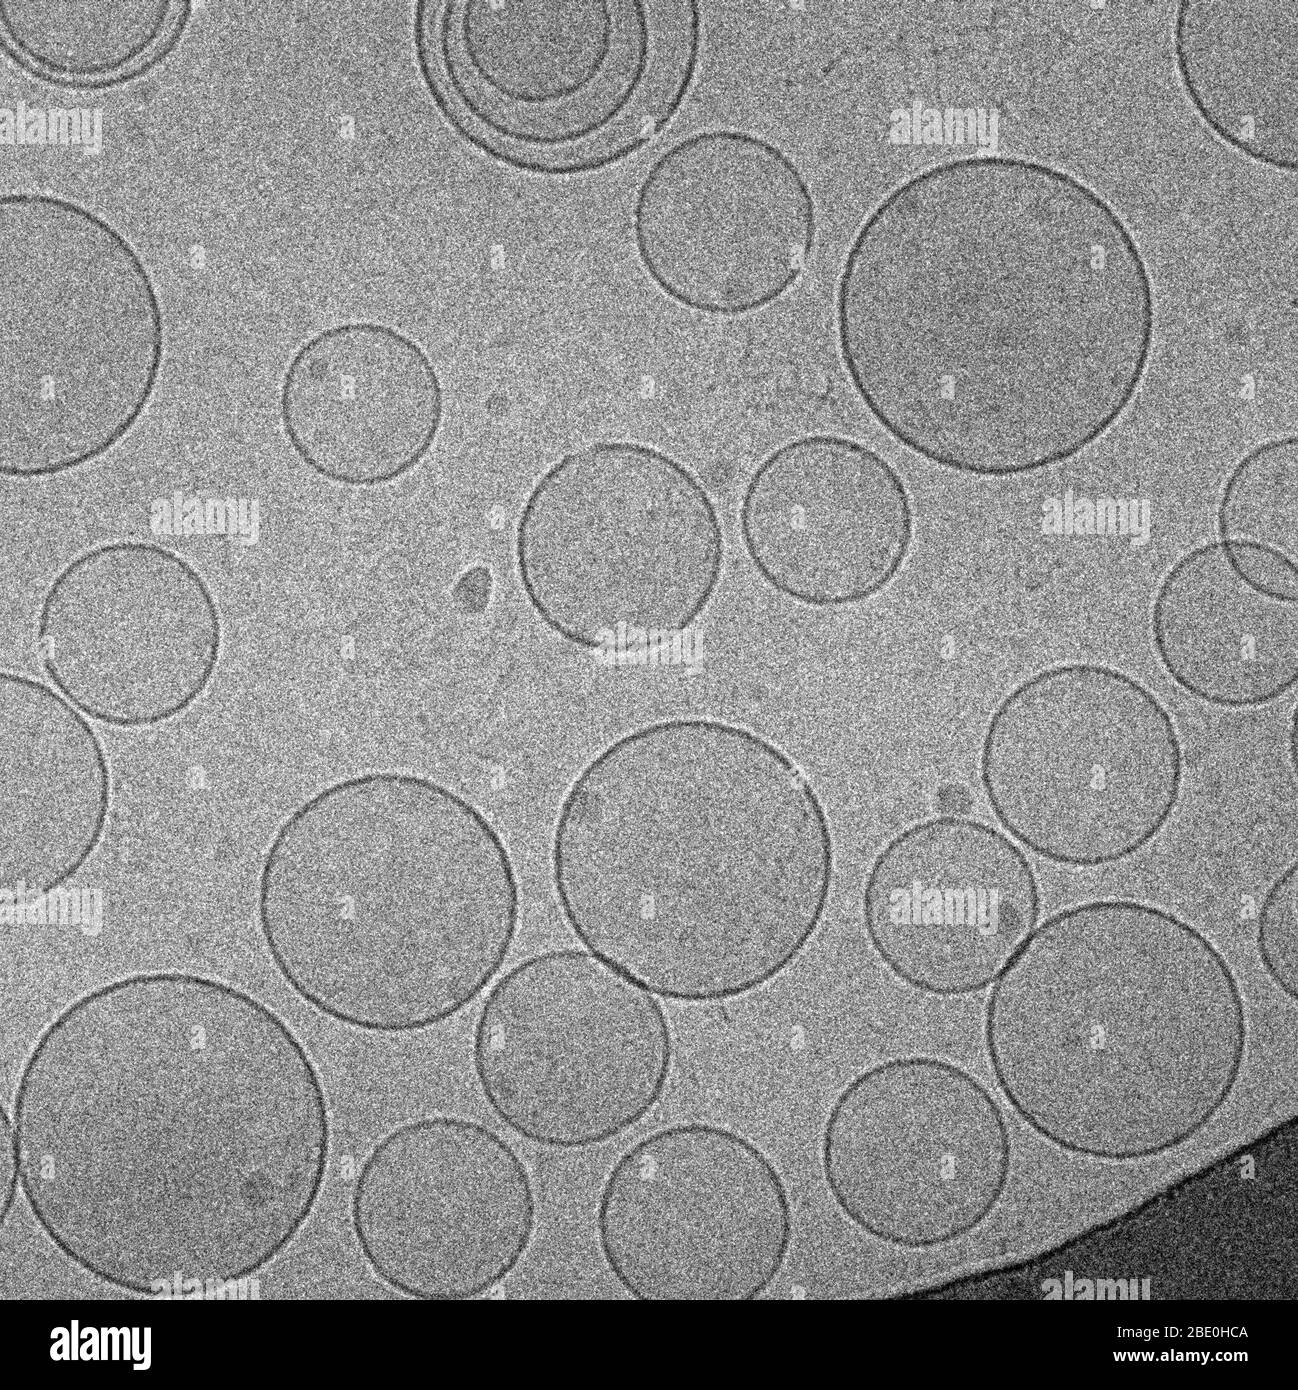 Kryo-EM-Bild von Bolalipid-Liposomen, künstlich präparierten Vesikeln, die aus einer Lipid-Doppelschicht bestehen. Sie können als Träger für die Verabreichung von Nährstoffen oder Arzneimitteln verwendet werden. Vergrößerung unbekannt. Stockfoto